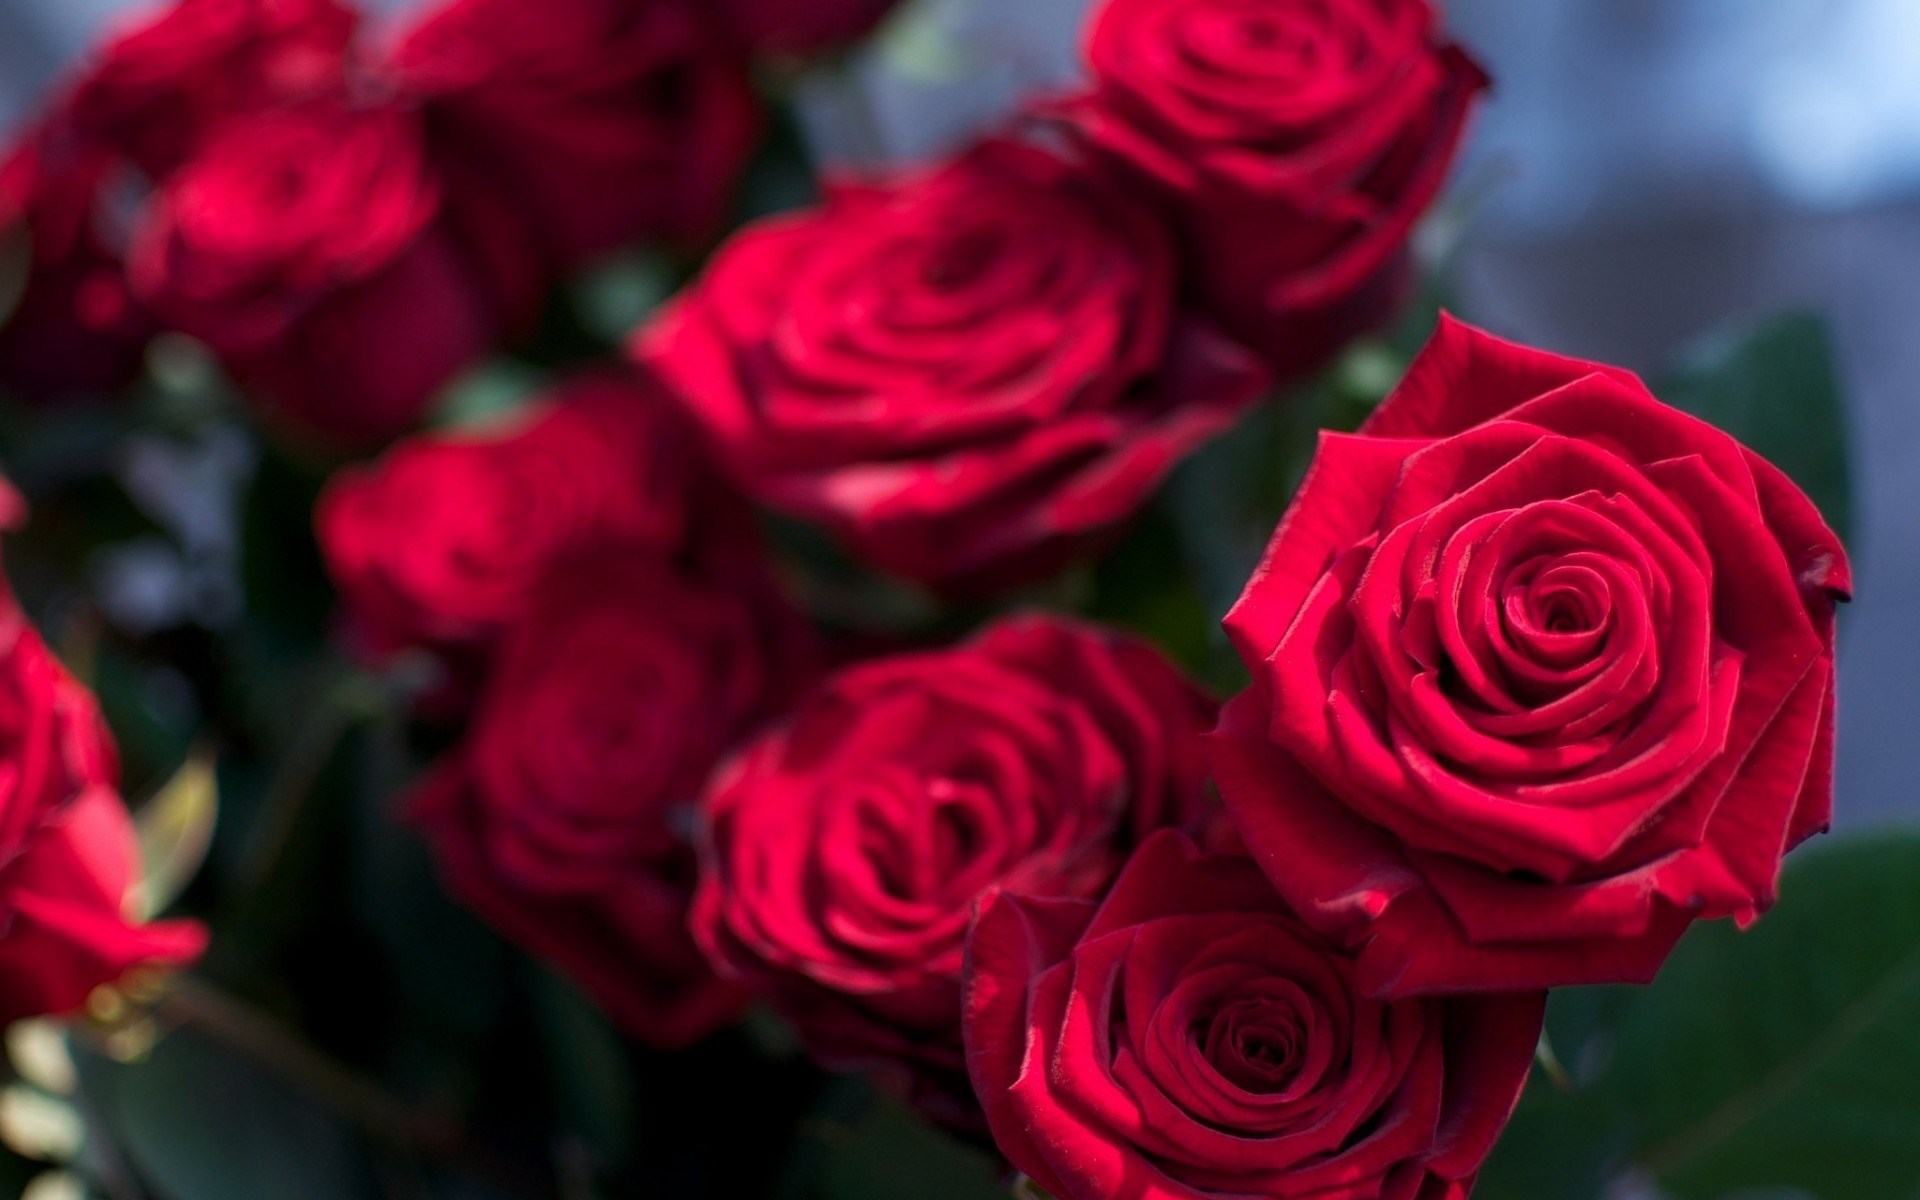 Hình ảnh những bông hoa hồng đỏ tươi thắm